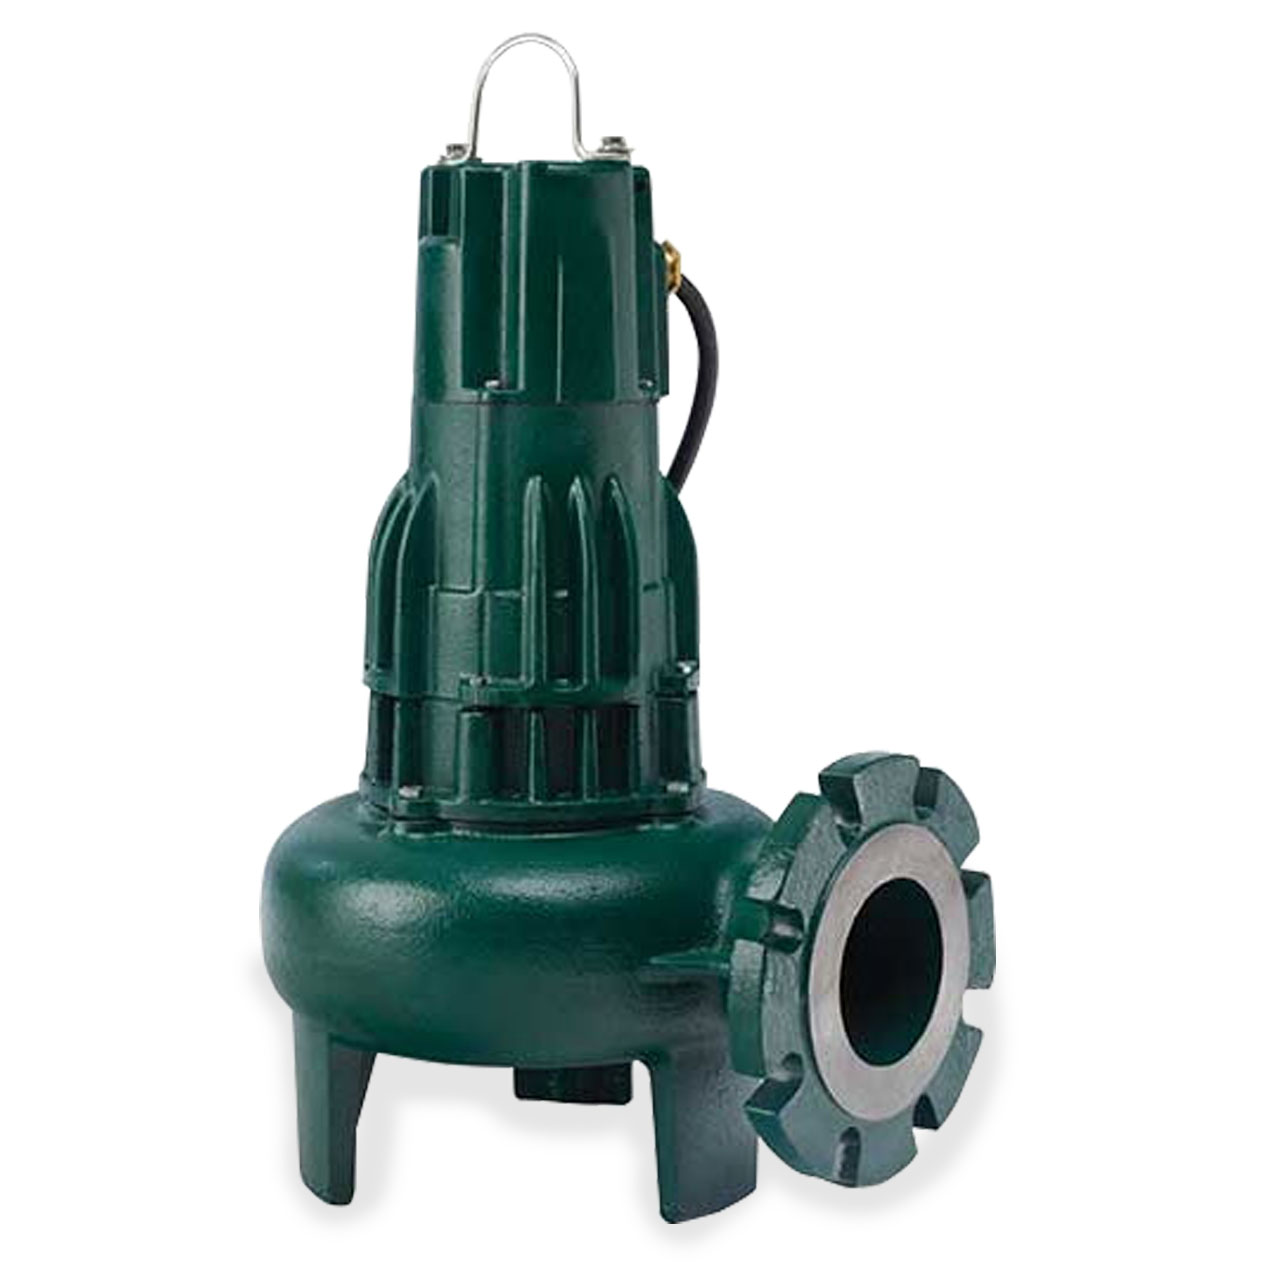 Sewage Pump, sewage ejector pump, dewatering pump, large sump pump, efflu.....